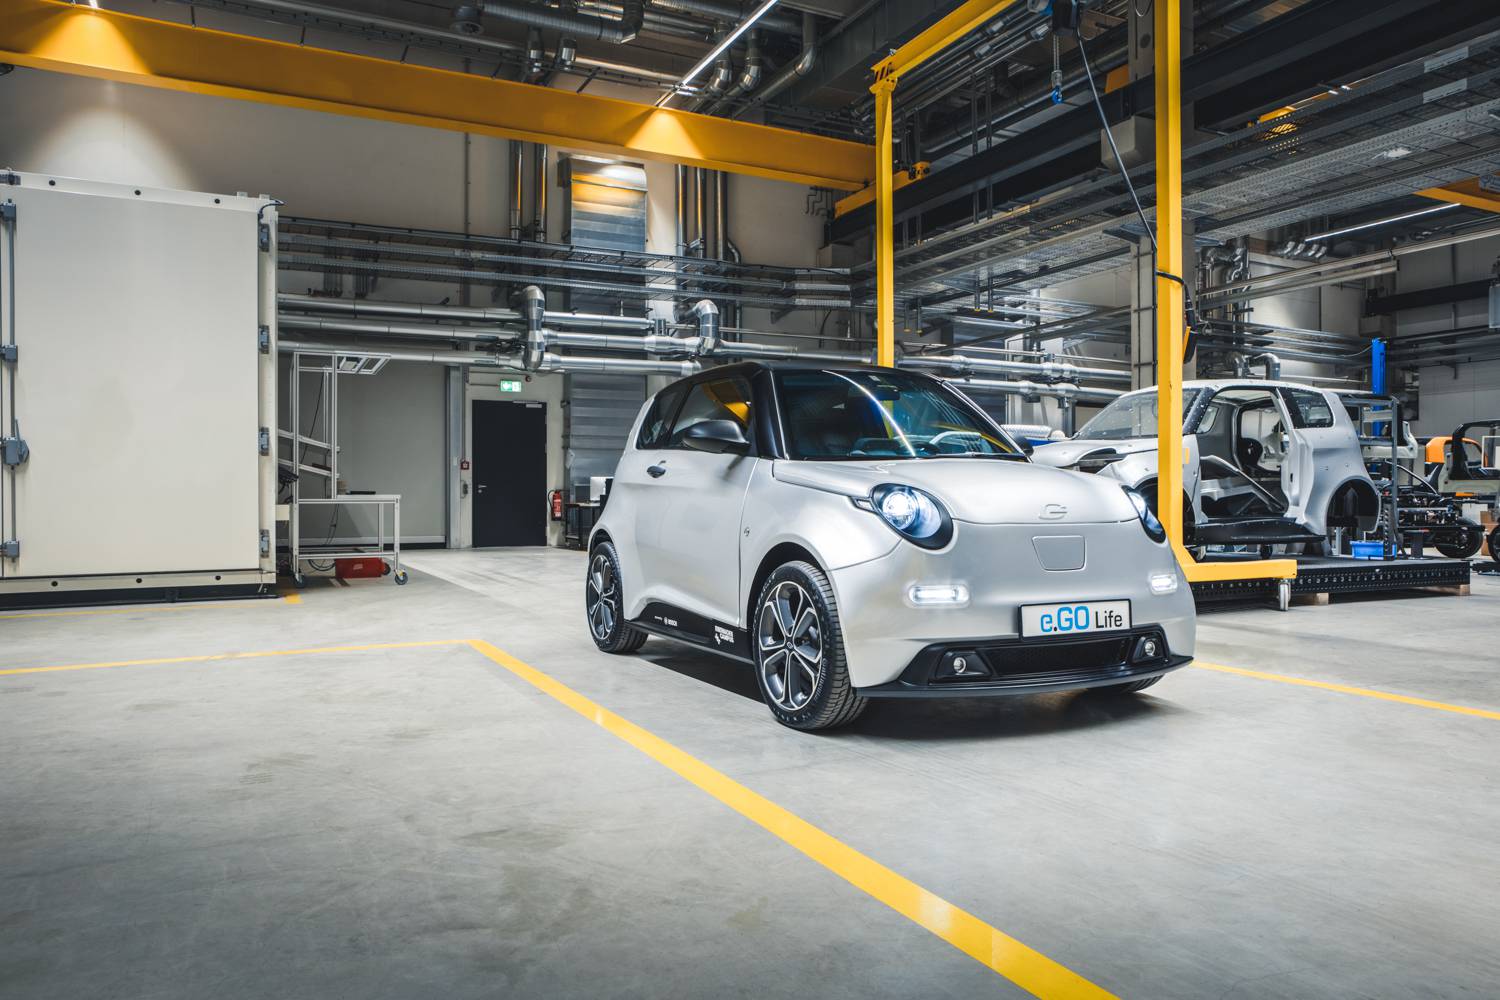 Avrupa pazarına yönelik uygun fiyatlı elektrikli otomobil: e.Go Life